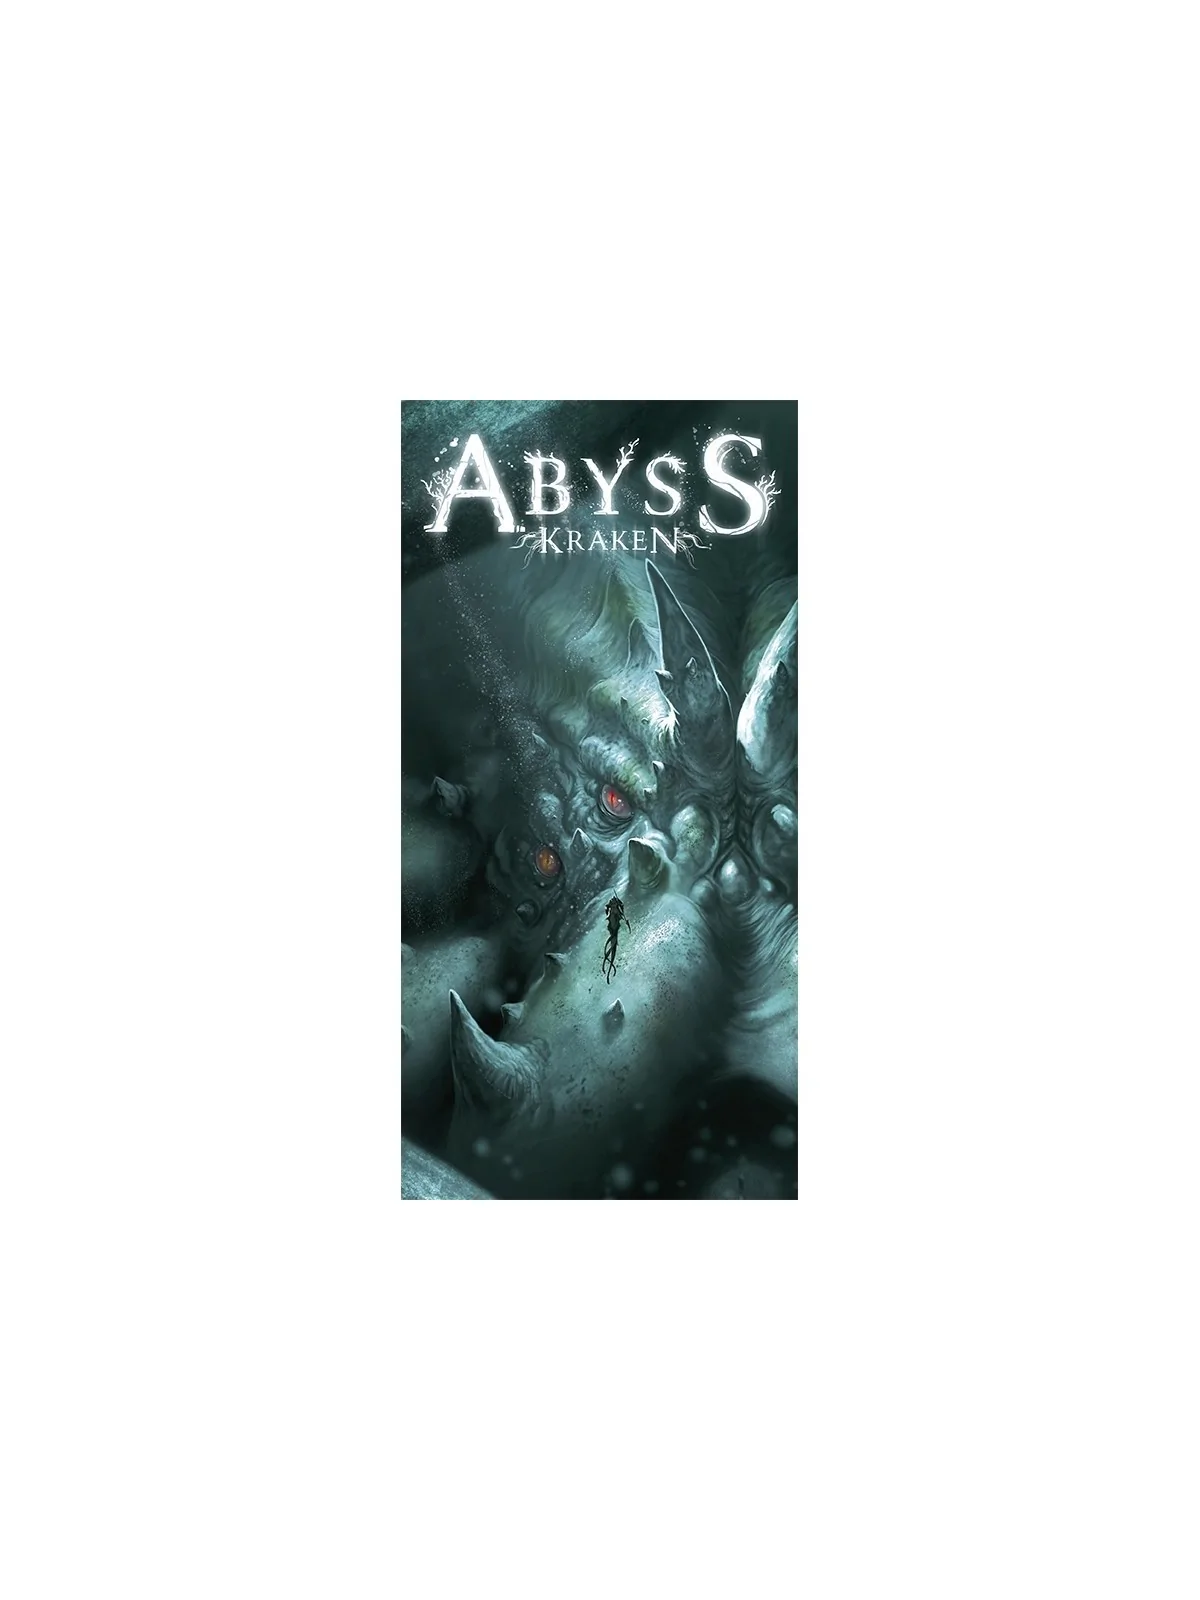 Comprar Abyss: Kraken barato al mejor precio 22,50 € de Do It Games